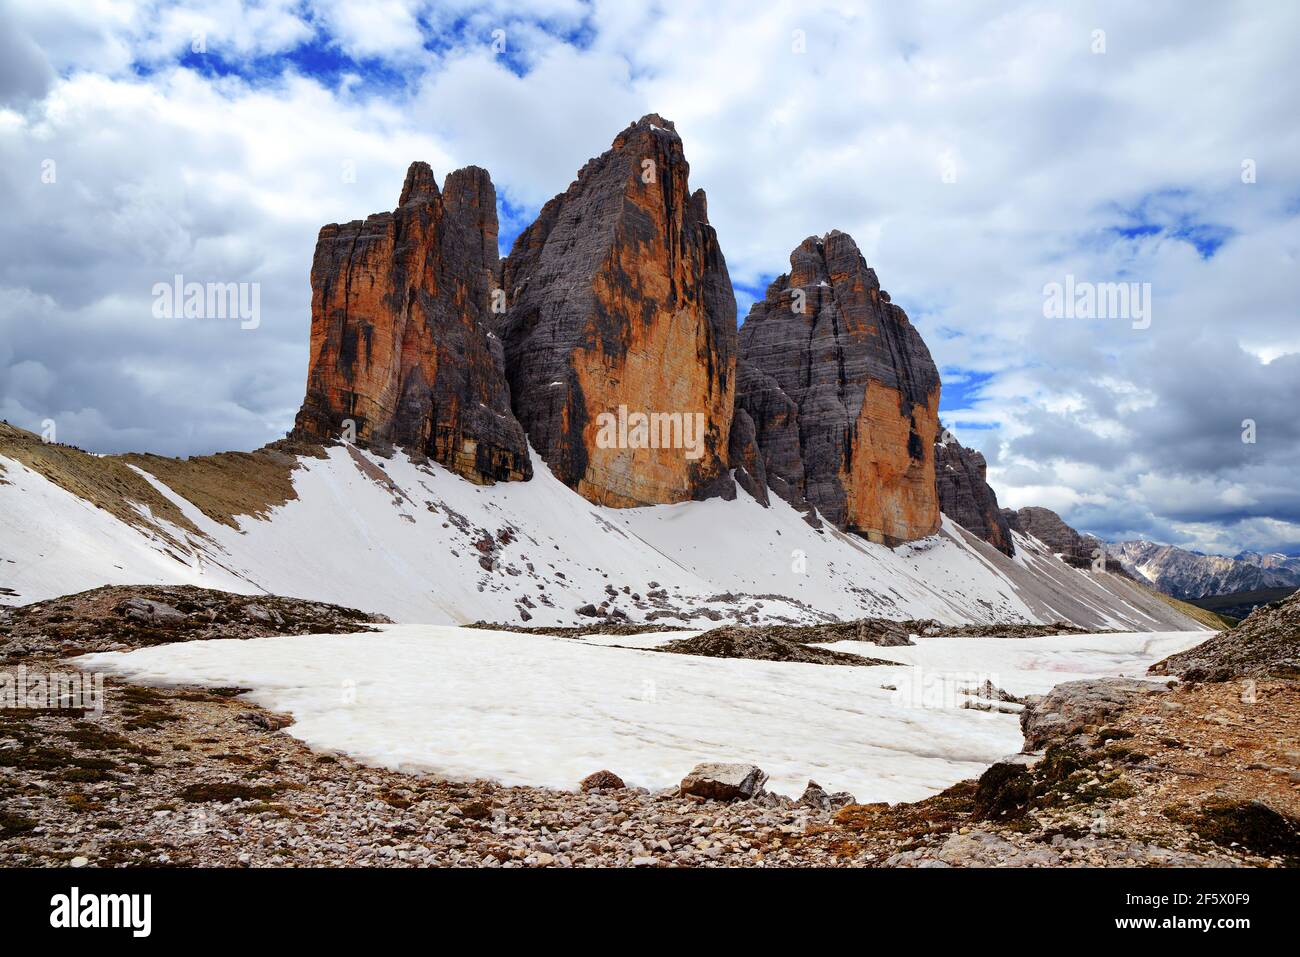 Drei Zinnen o tre Cime di Lavaredo, Dolomiti Sesto, Italia. Paesaggio di montagna. Foto Stock